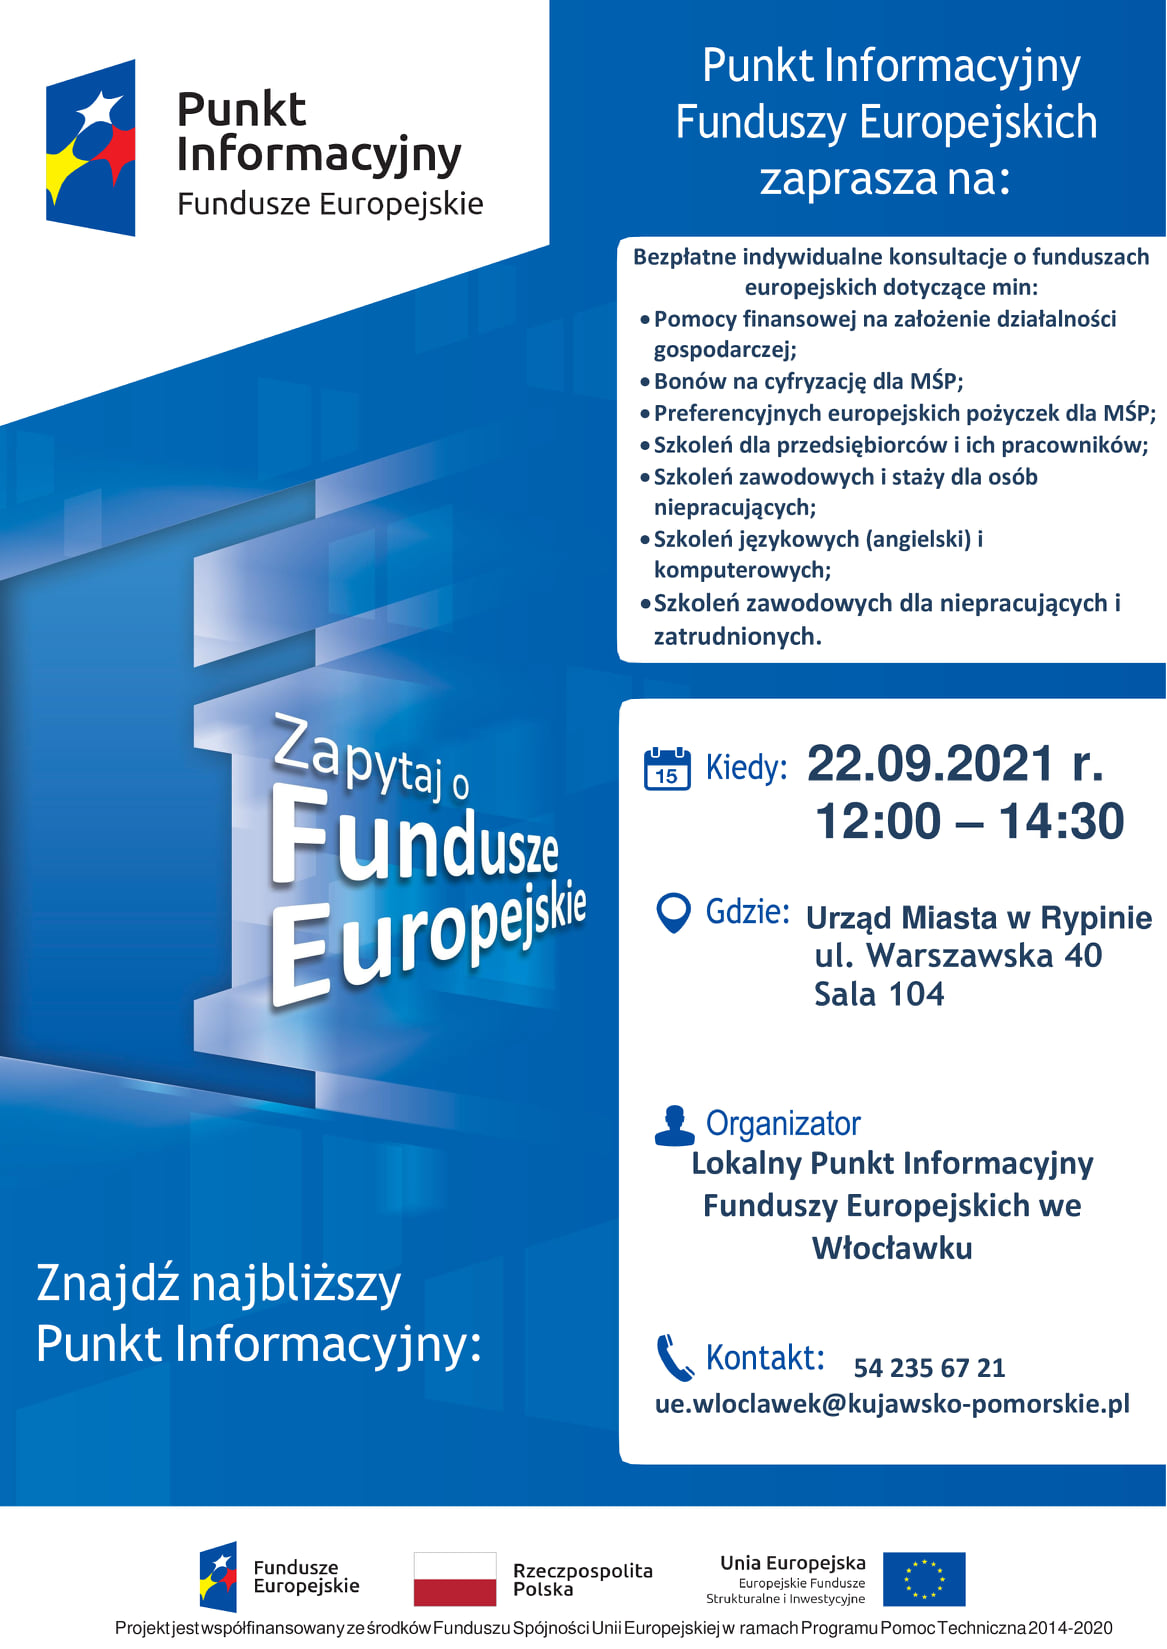 Plakat w kolorach biało niebieskich, zapraszający na bezpłatne indywidualne konsultacje o funduszach europejskich, które odbędą się 22 września w godzinach od 12.00 do 14.30 w Urzędzie Miasta Rypin, pokój 104.